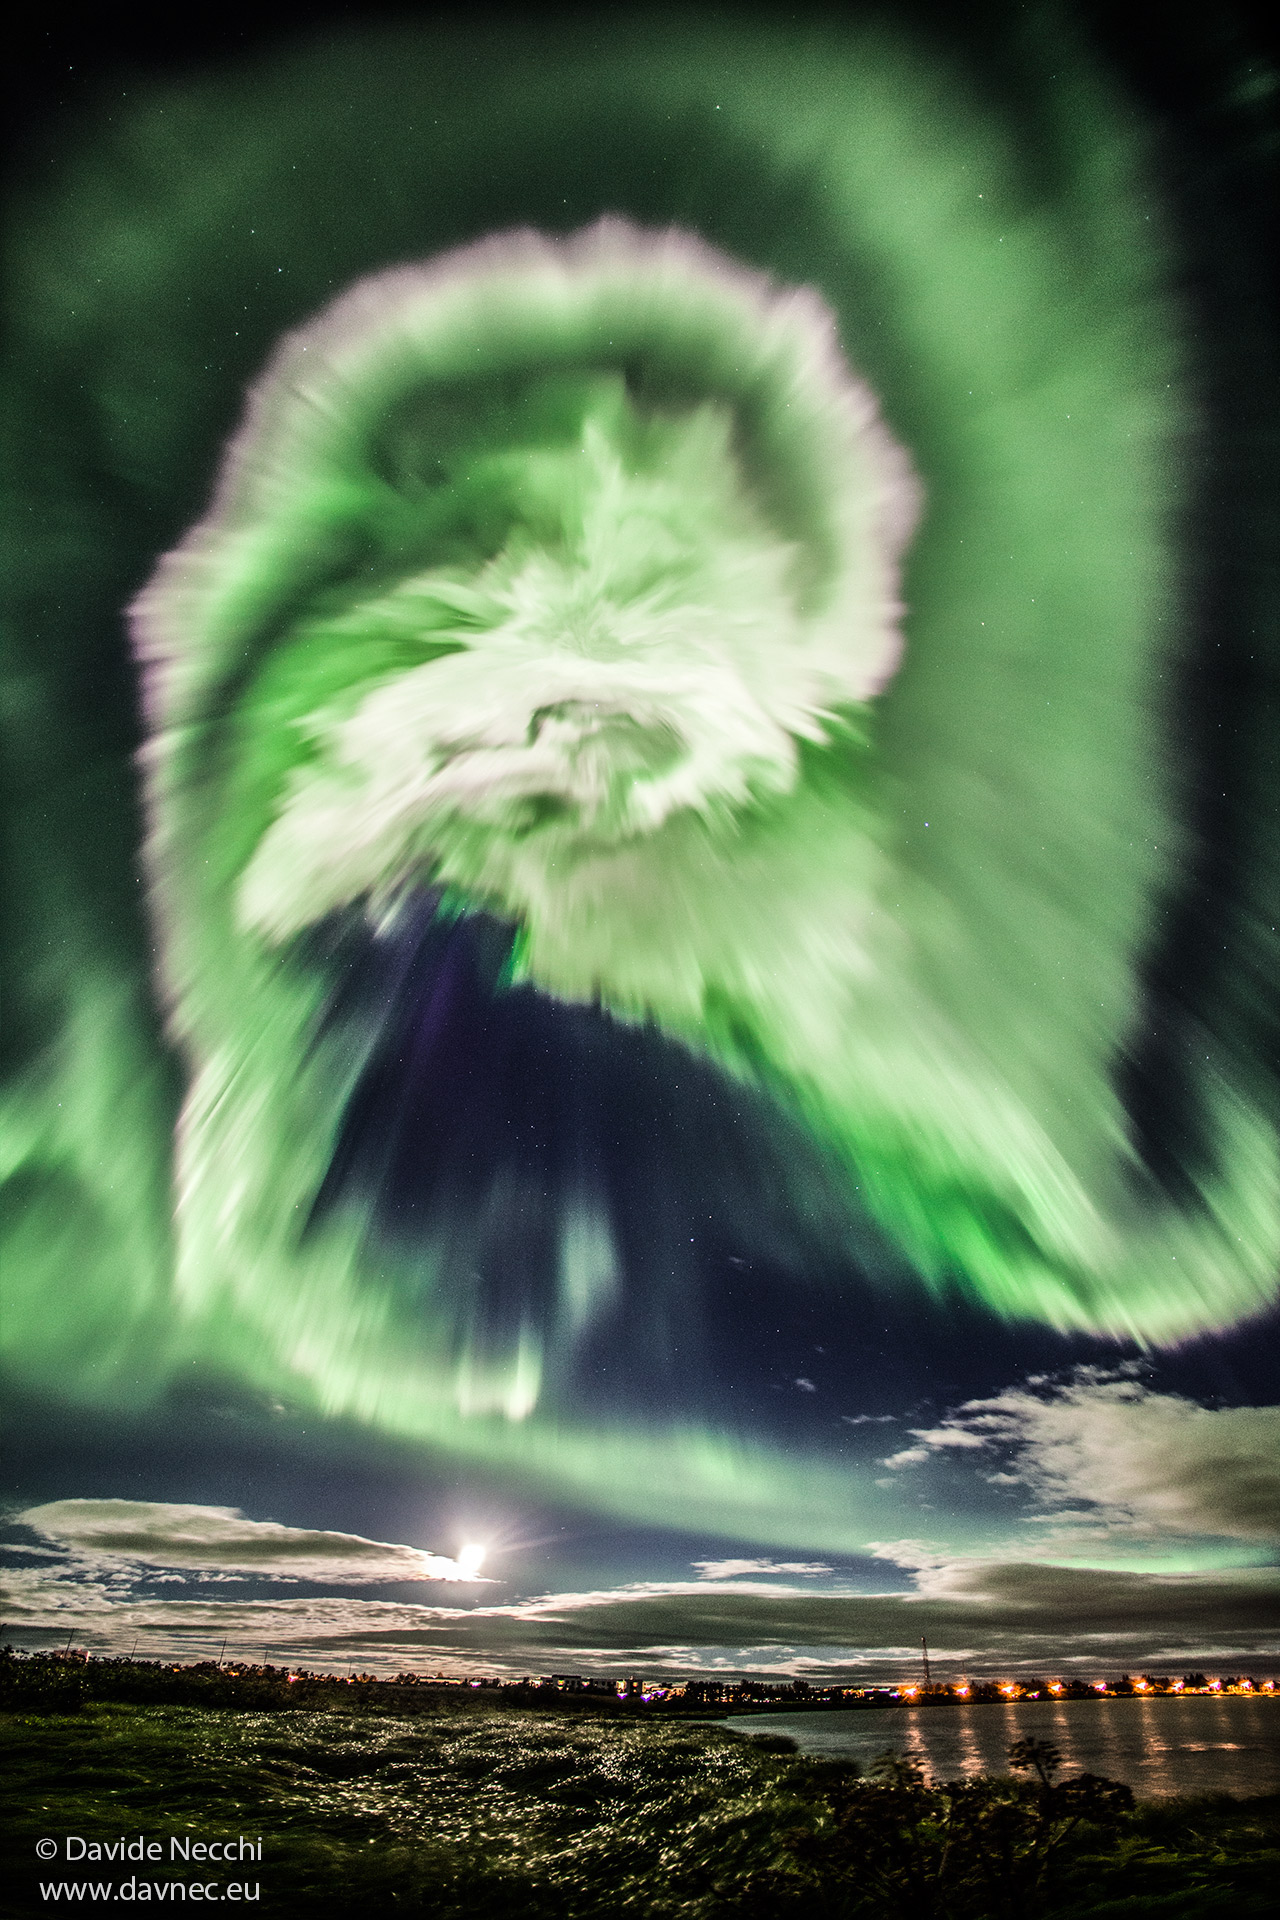 图片显示了冰岛上空的戏剧性螺旋状极光。有关更多详细信息，请参阅说明。